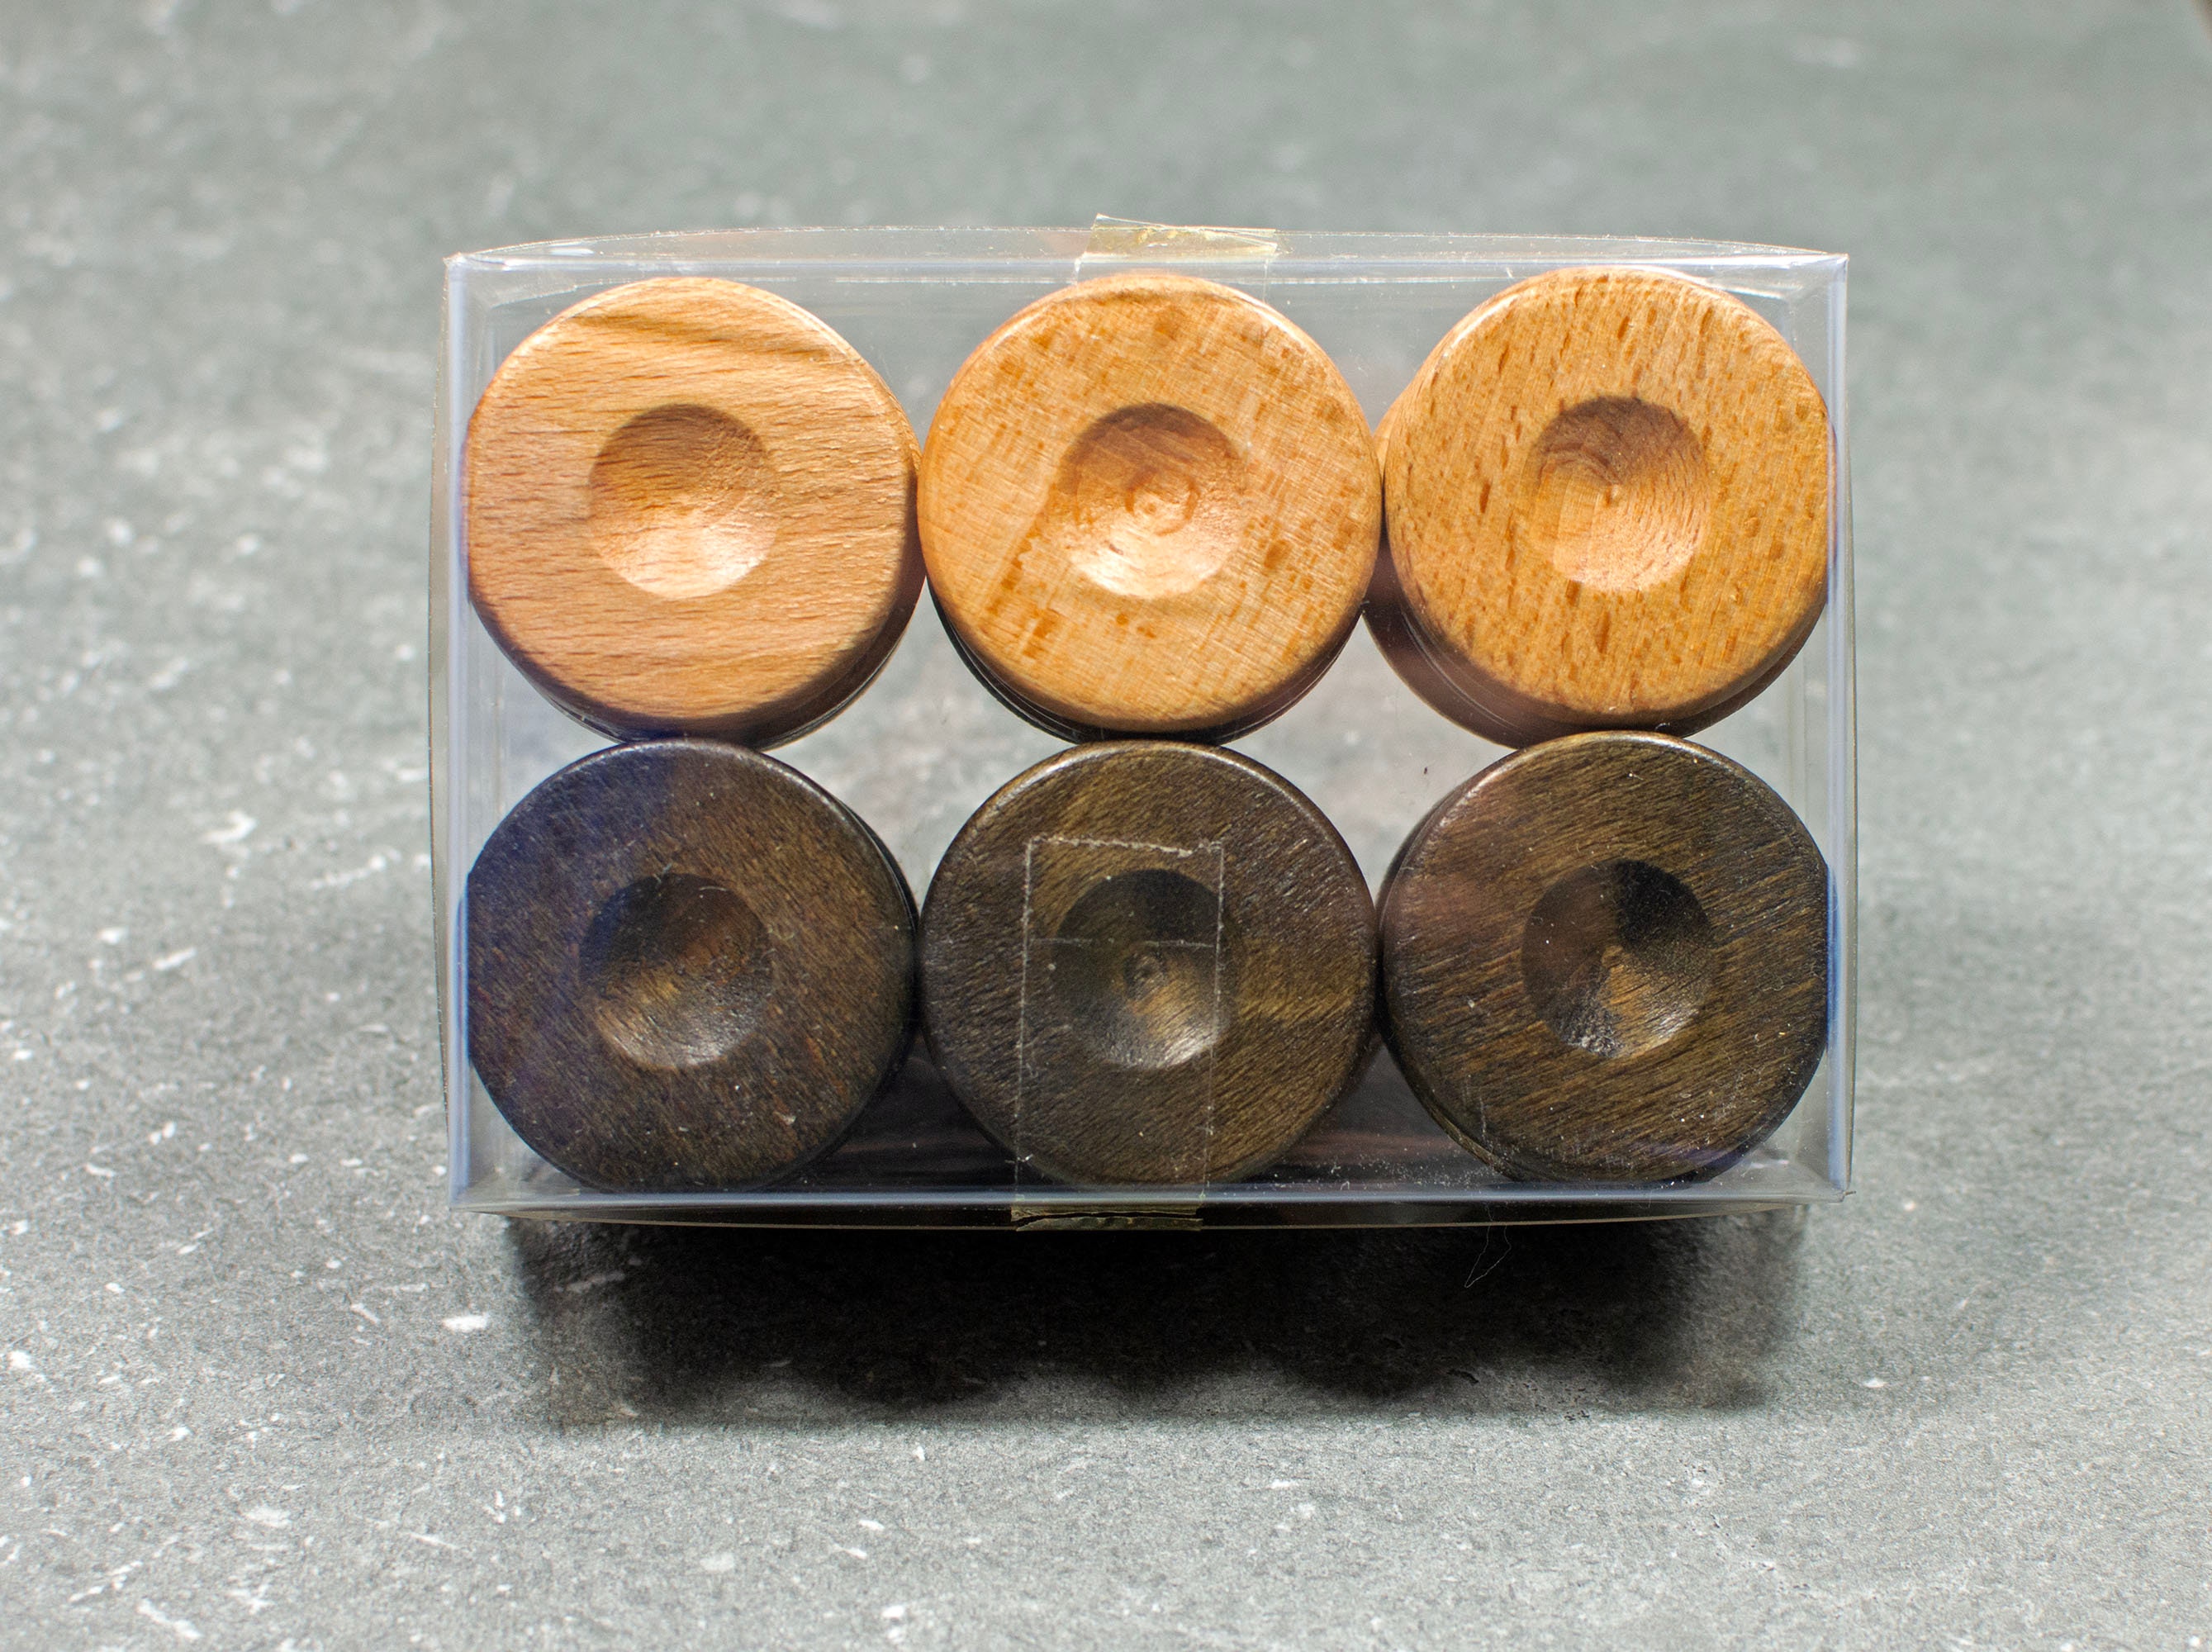 30 Βeech Wood Backgammon Checkers Chips 36mm 1.4 Inches High Quality 